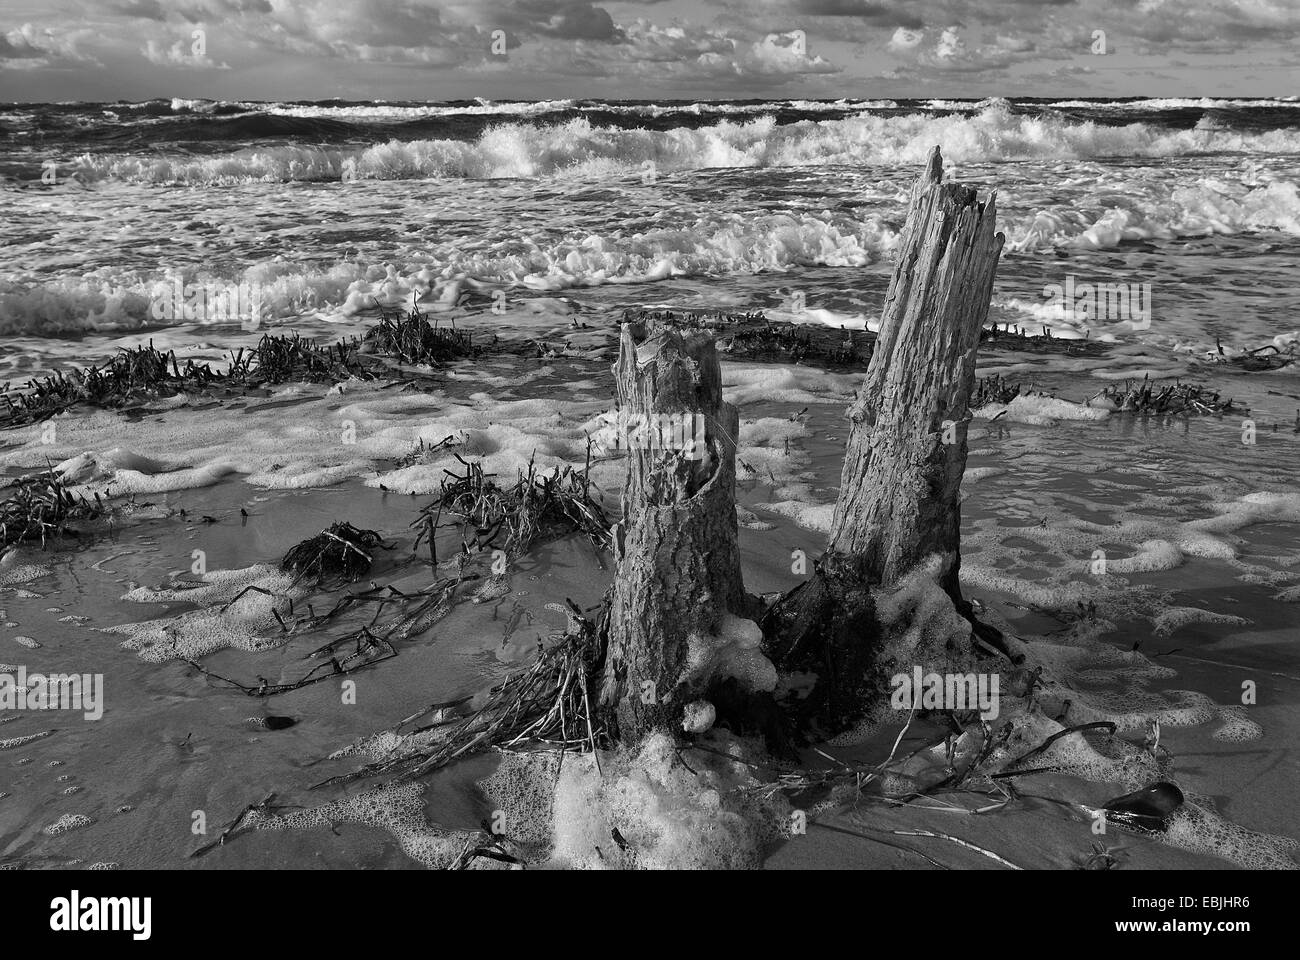 Les chicots d'arbres sur la plage de la mer Baltique, la photographie noir et blanc, de l'Allemagne, de Mecklembourg-Poméranie-Occidentale, de la mer Baltique Banque D'Images